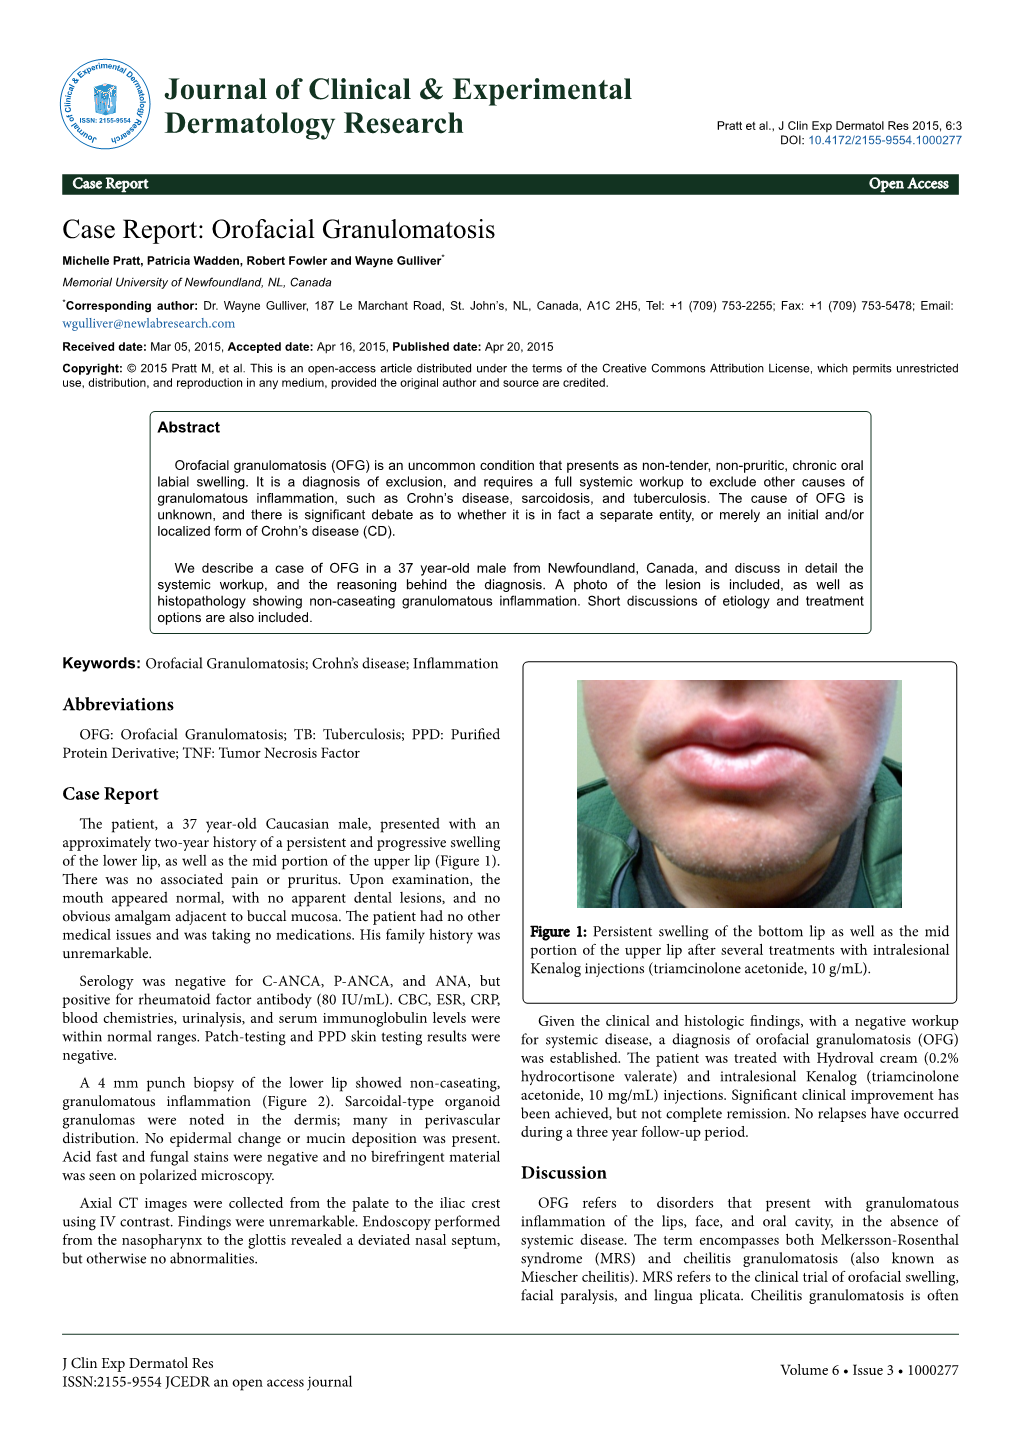 Case Report: Orofacial Granulomatosis